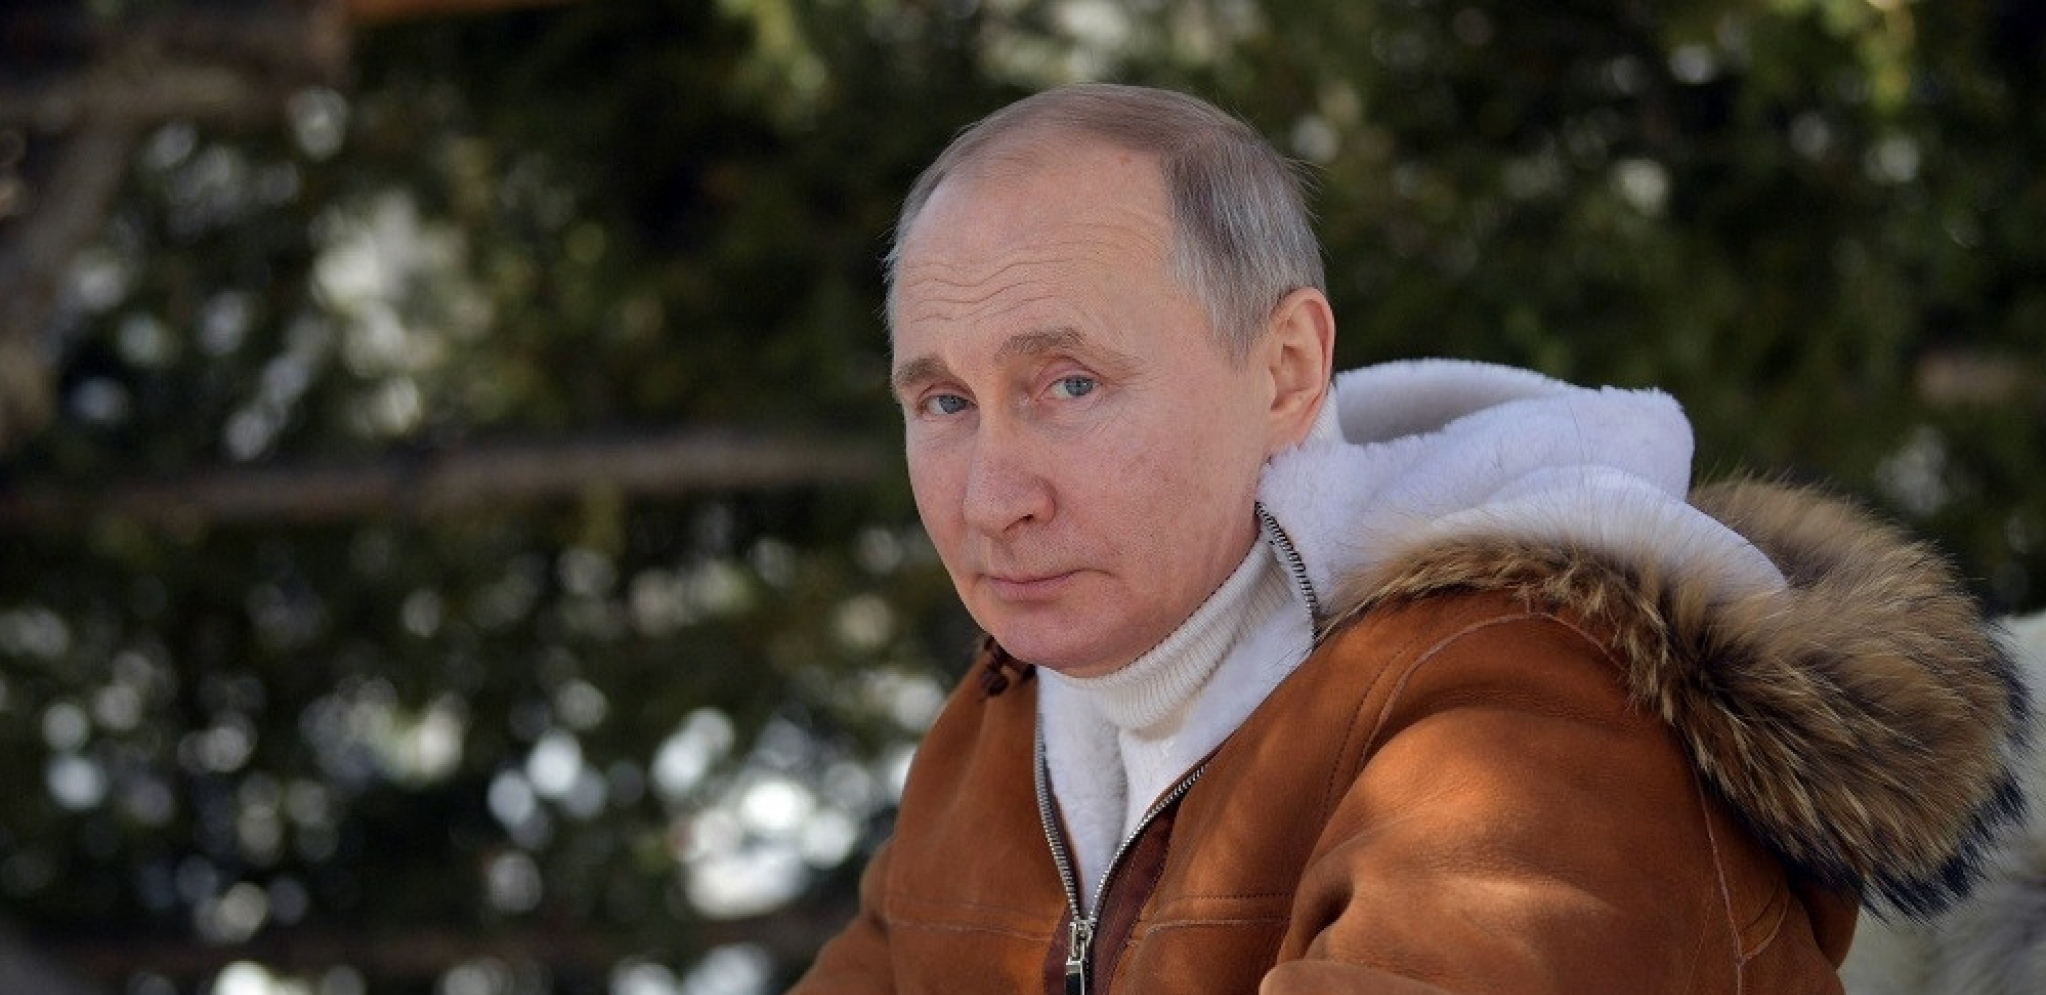 ŠOLC UVEREN DA PUTIN NEĆE UPOTREBITI NUKLEARKE Ruski predsednik drugačije misli